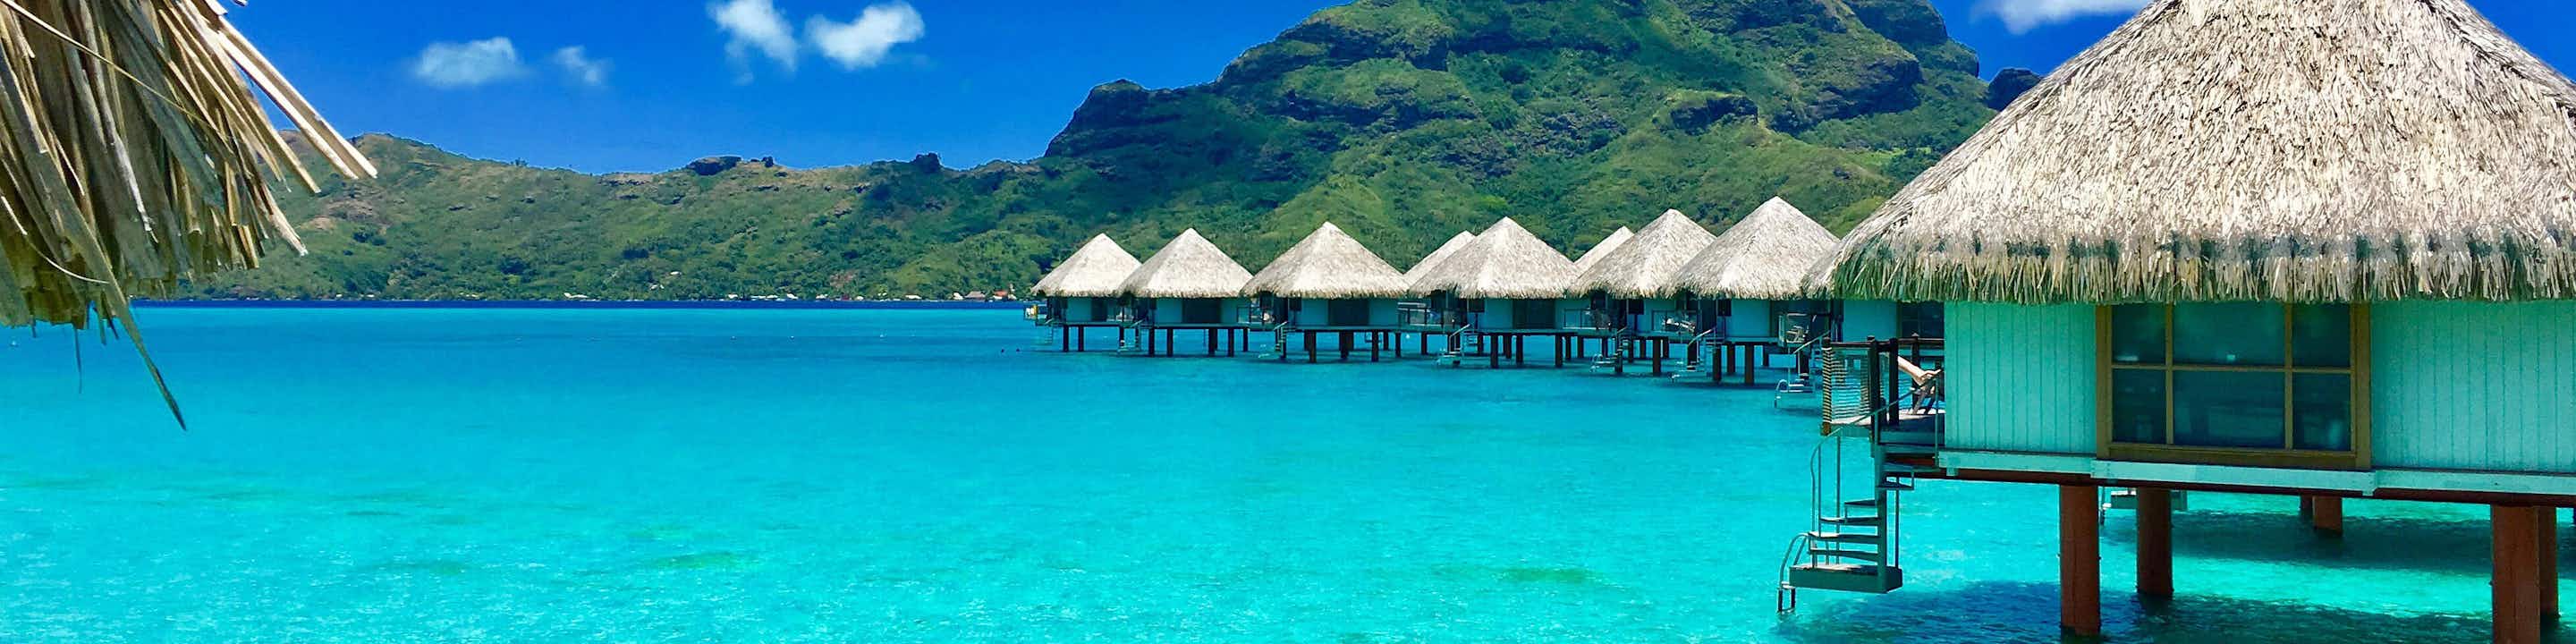 THE 25 BEST Cruises to Bora Bora 2021 (with Prices) Bora Bora Cruise